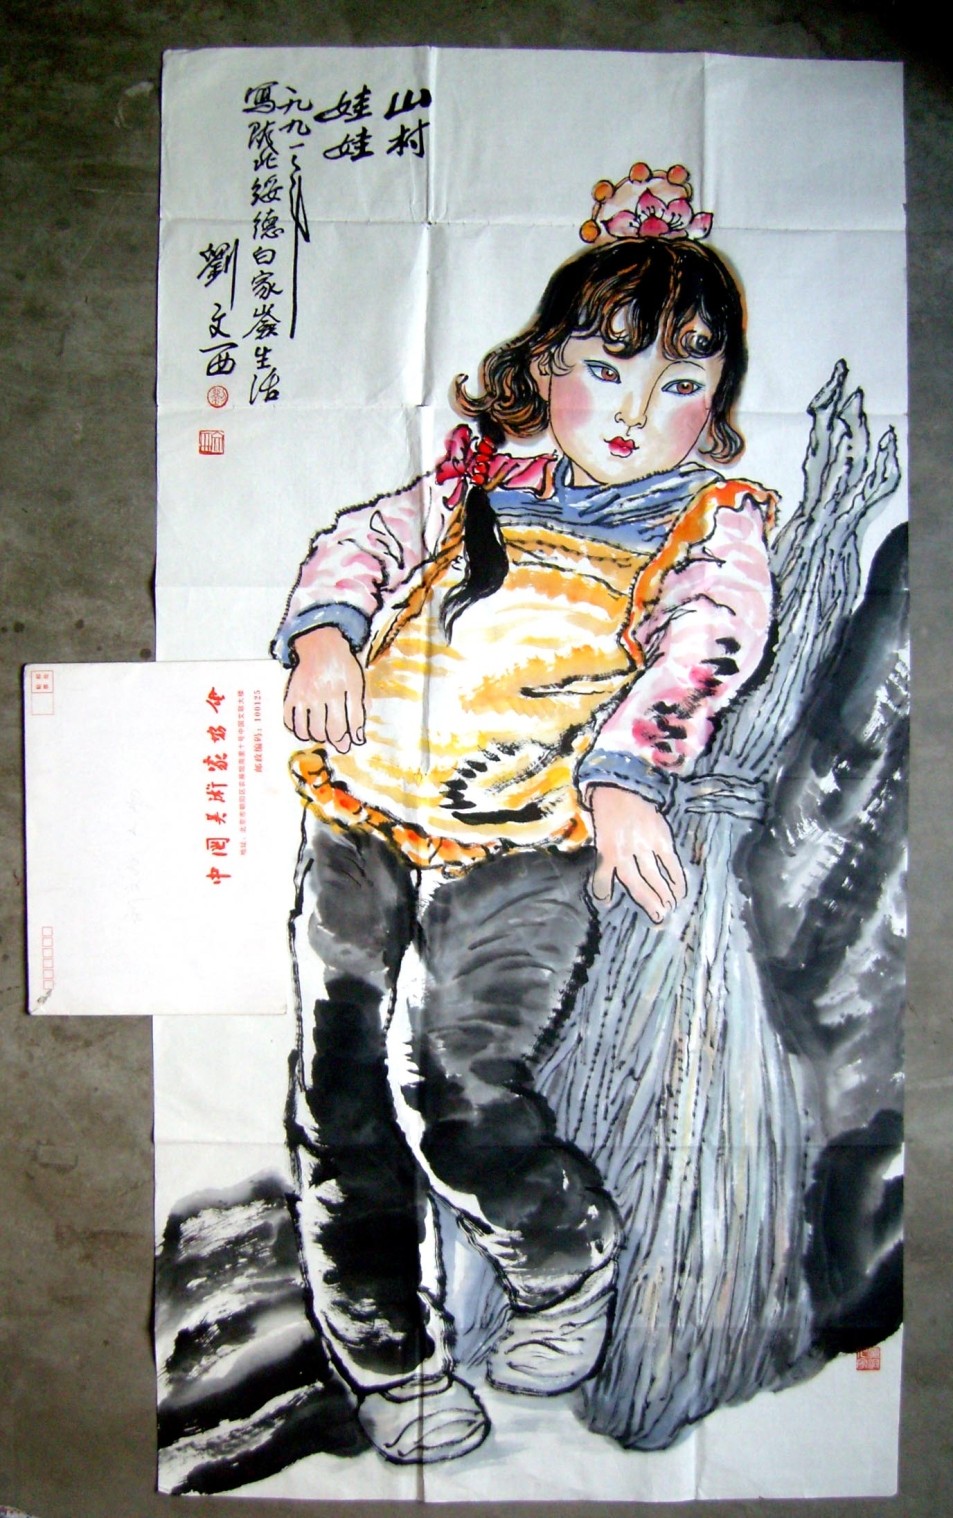 名家字画 陕西国画院院长 刘文西 《1991年手绘彩墨人物画精品》